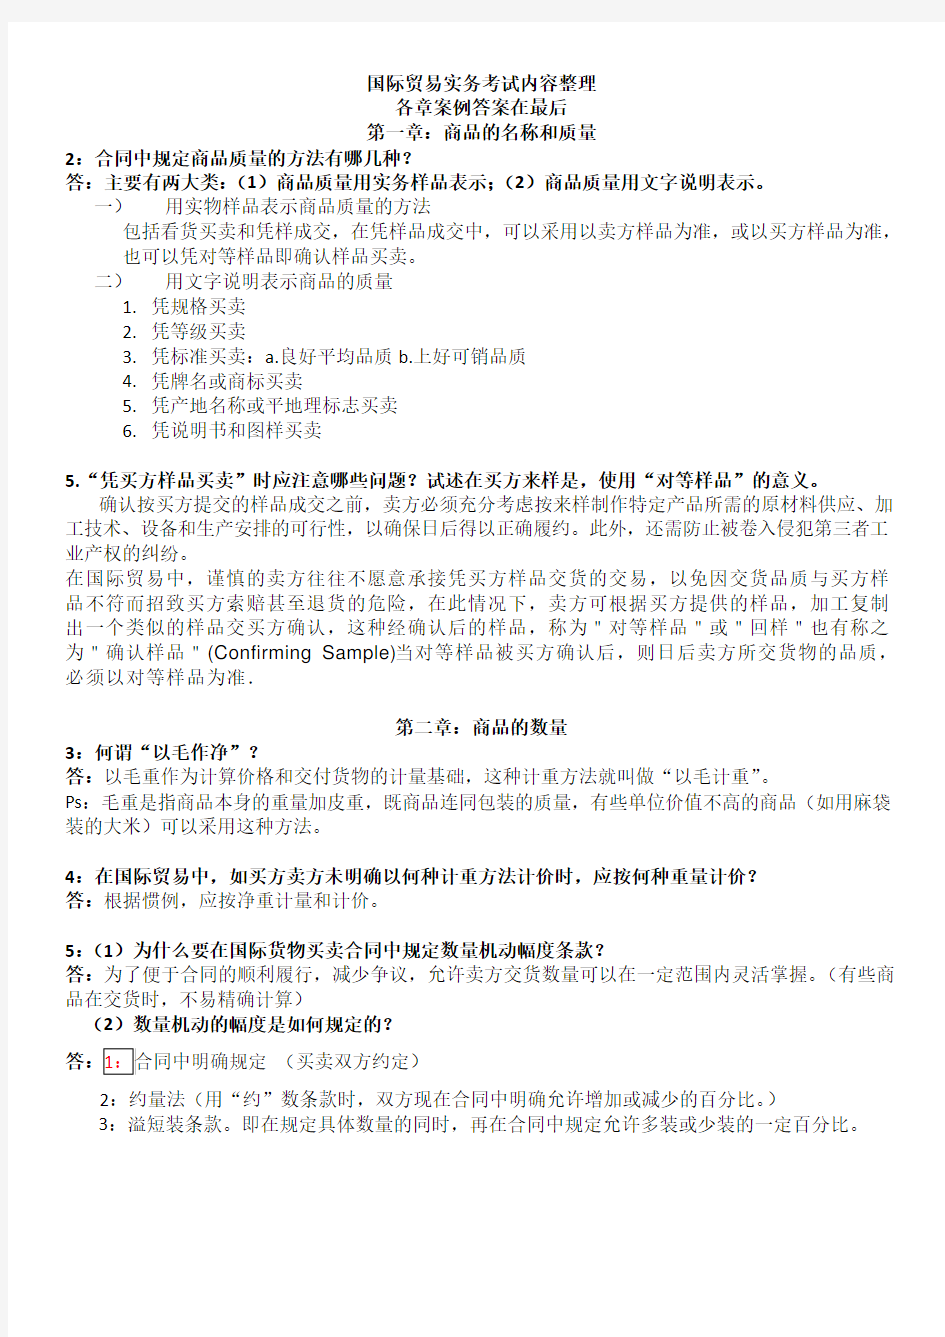 吴百福《进出口贸易实务教程》第七版考试答案便携版